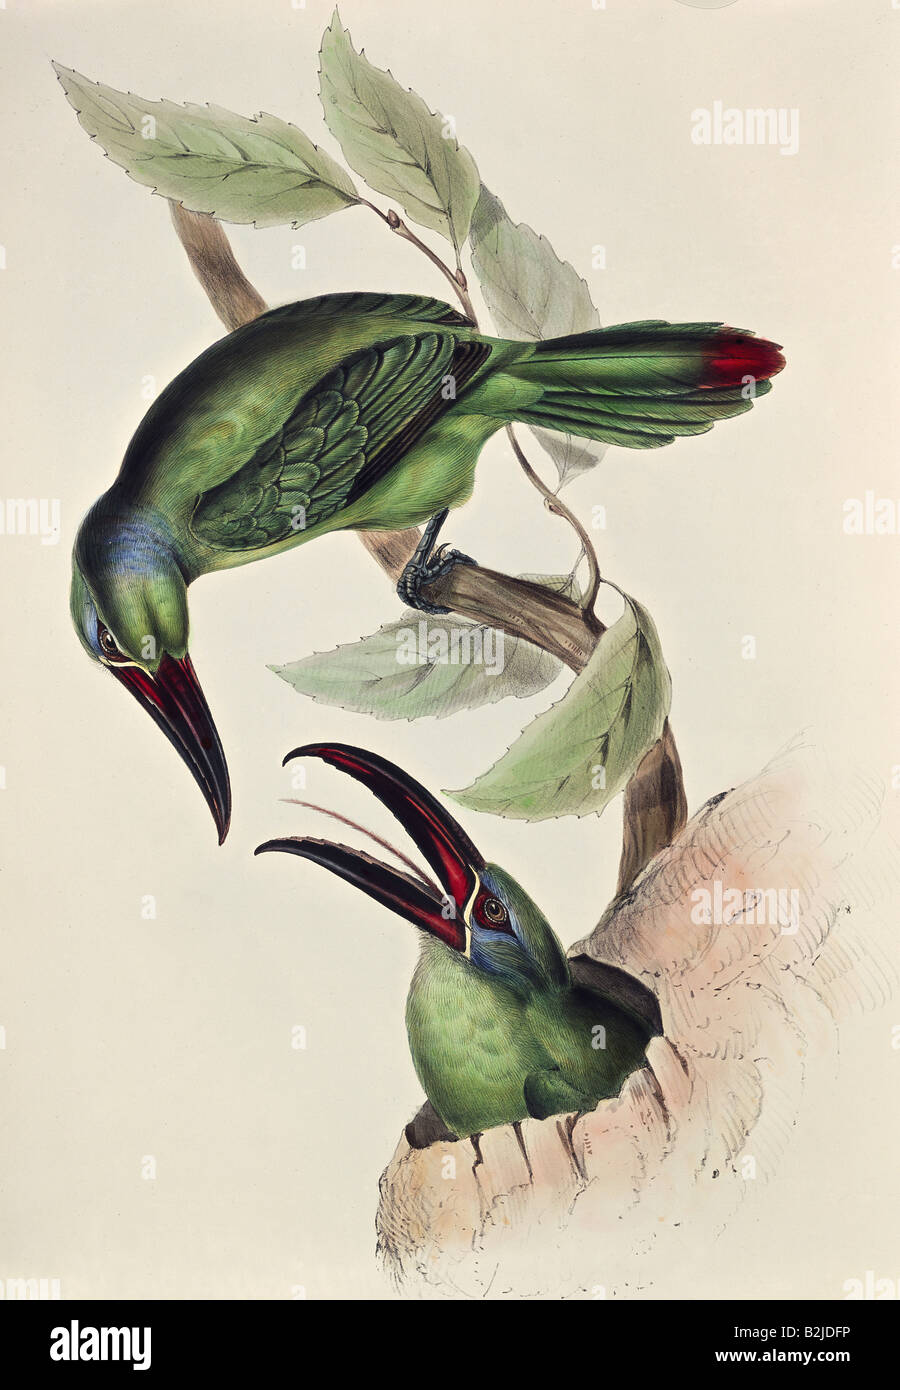 Zoologie, oiseau / oiseau, Toucan (Ramphastidae), toucan vert, lithographie d'Edward Lear, 'Illustrations de la famille des Psittacidae', Londres, 1831 - 1833, collection privée, Banque D'Images